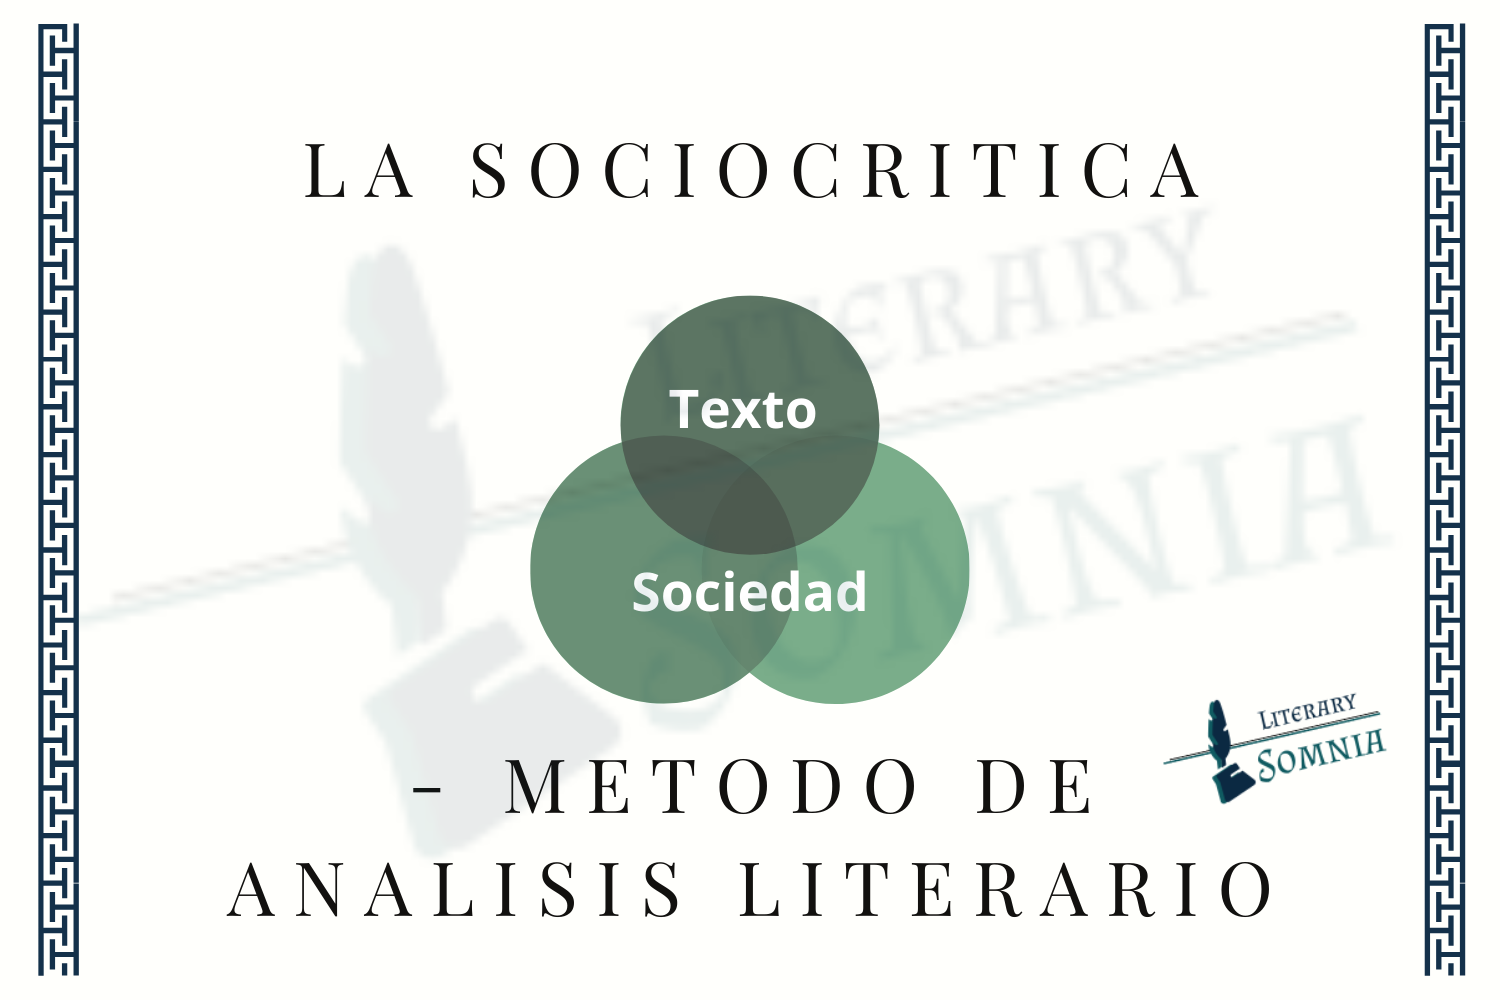 Sociocritica método de análisis literario